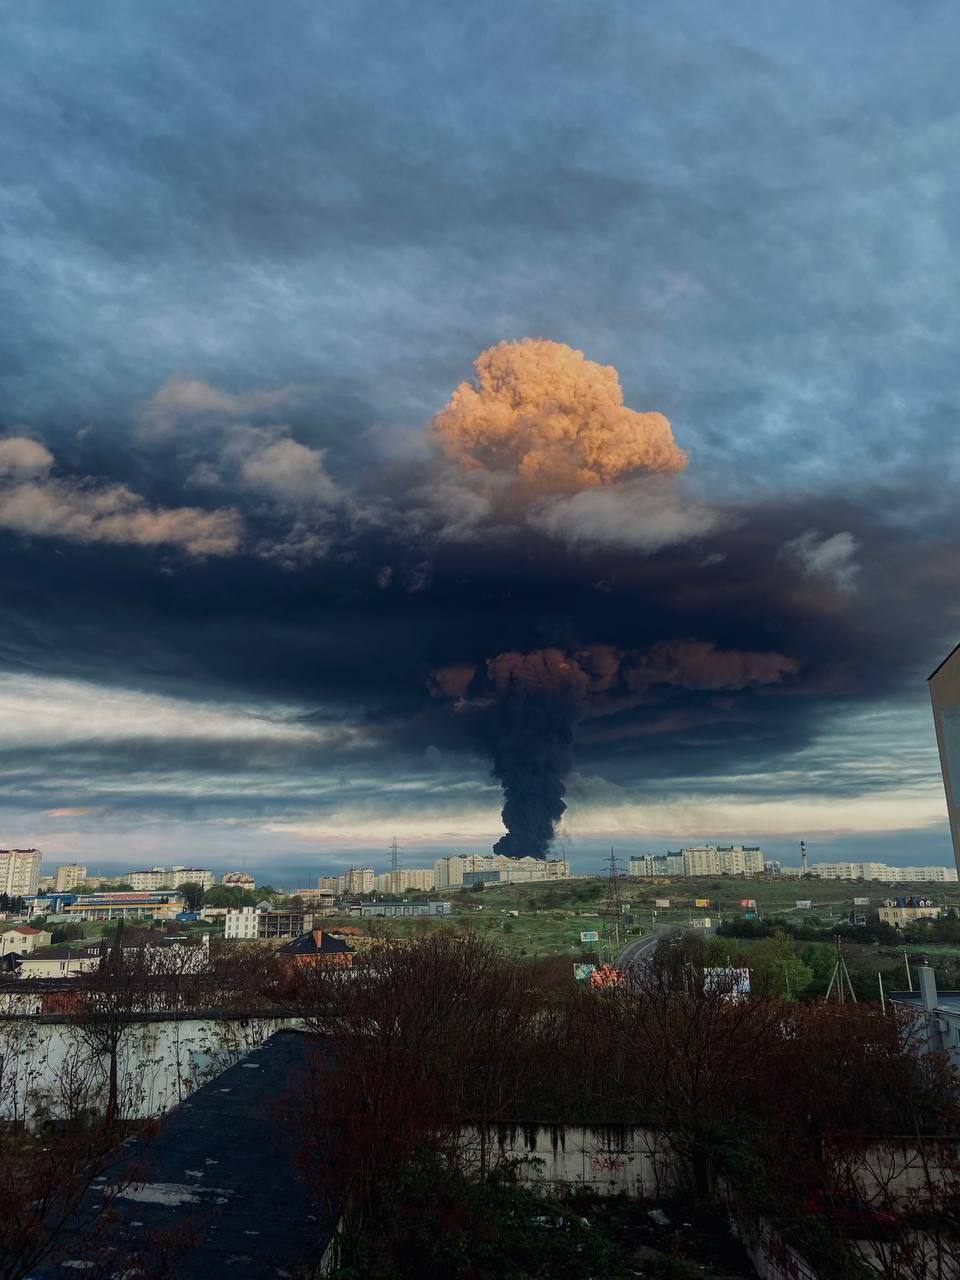 เช้าวันนี้ เวลา 04.20 น. เกิดไฟไหม้ครั้งใหญ่ที่คลังน้ำมันของรัสเซียที่ตั้งอยู่ในอ่าวคอซแซค เมืองเซวาสโทพอล แหลมไครเมีย (ซึ่งปัจจุบันอยู่ภายใต้การยึดครองของรัสเซียชั่วคราว)